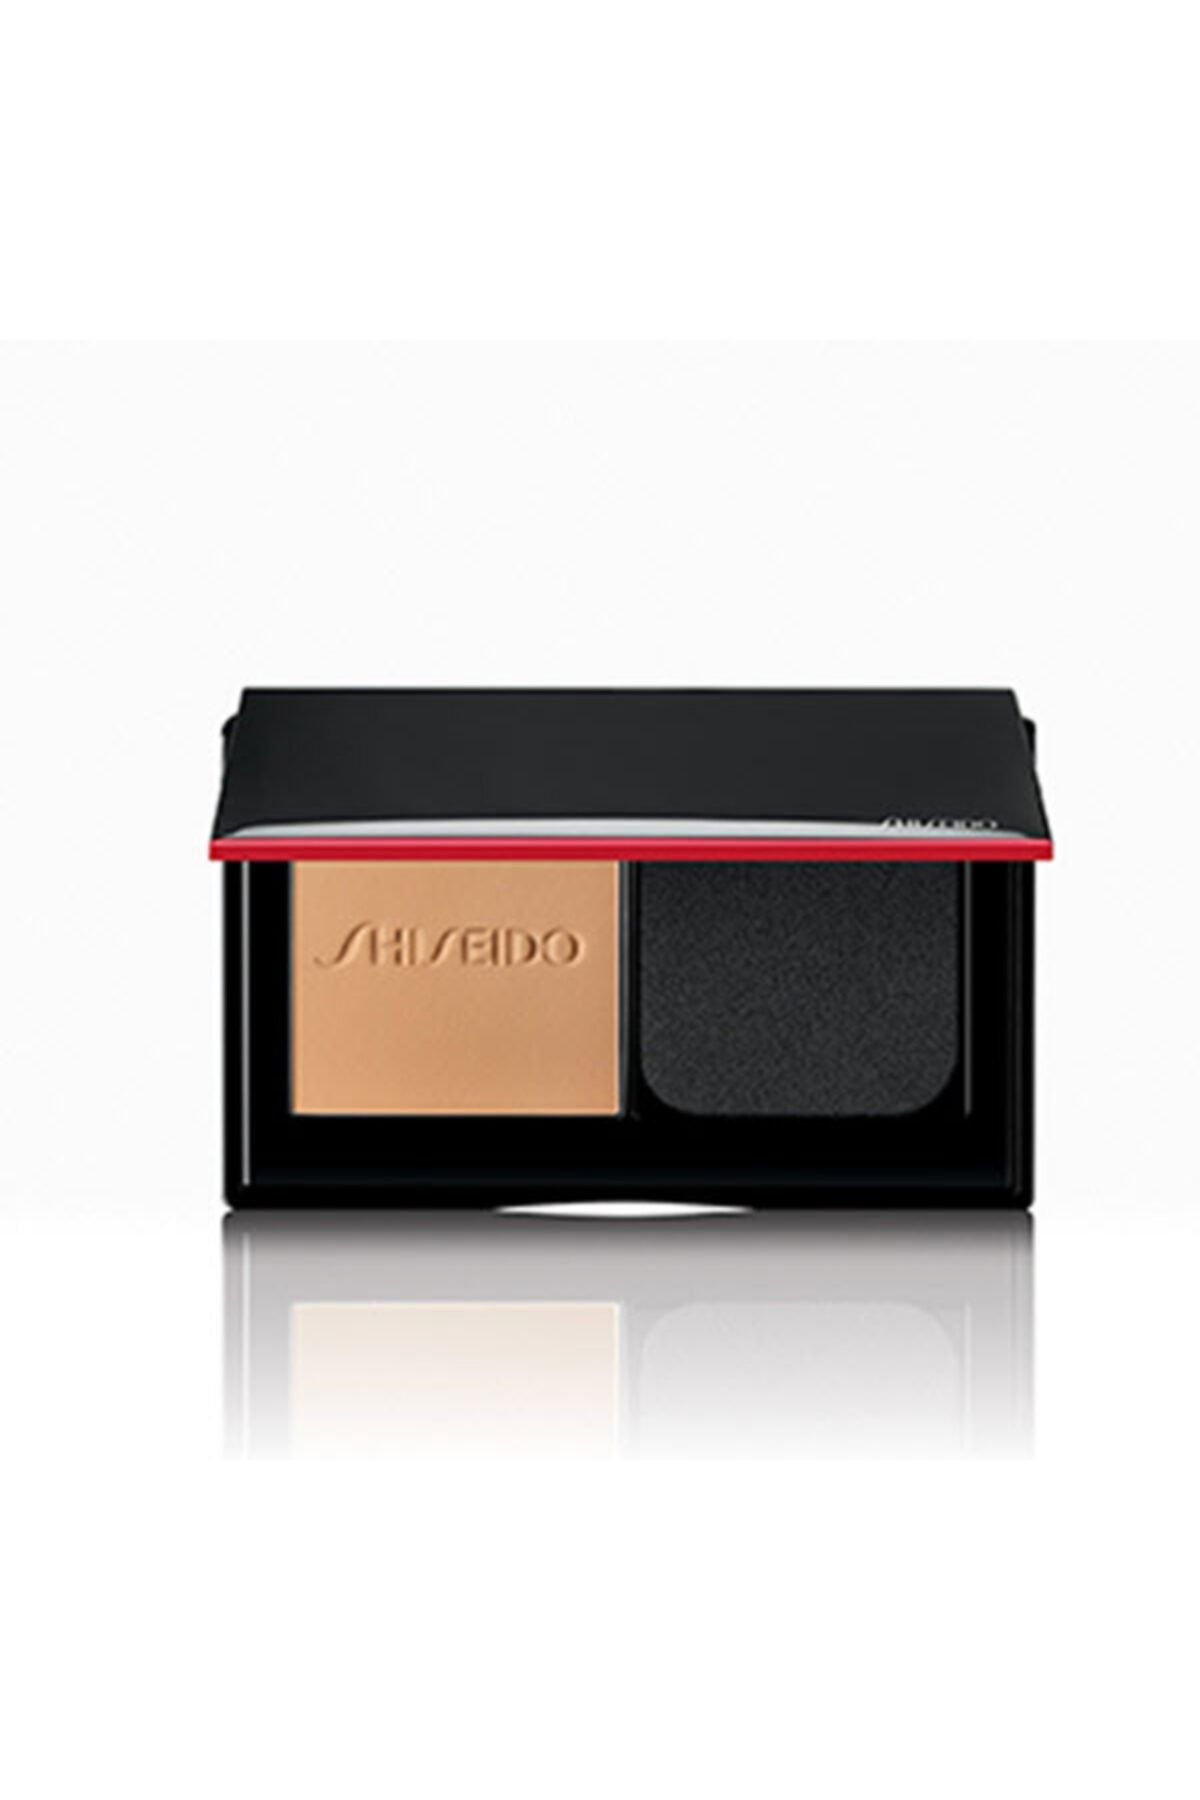 Shiseido Synchro Skin Self Refreshing Custom Finish Powder Fd 250 -24 Saat Dayanıklı Çift Kullanım Özellikli